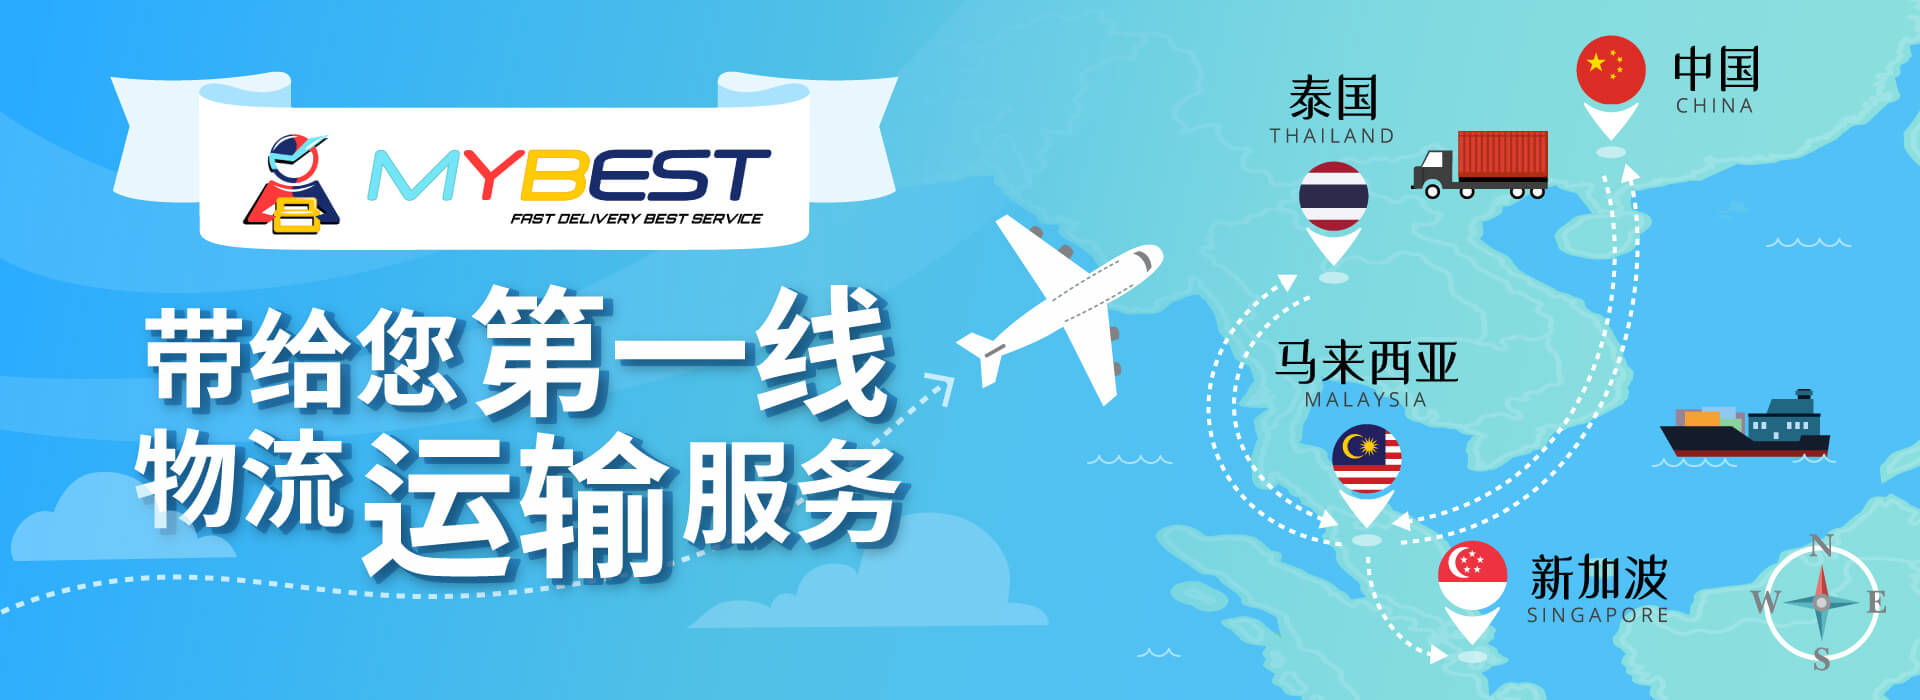 MYBEST提供货运进出口服务 | 多国货运服务 | 中国到马来西亚双向货运业务